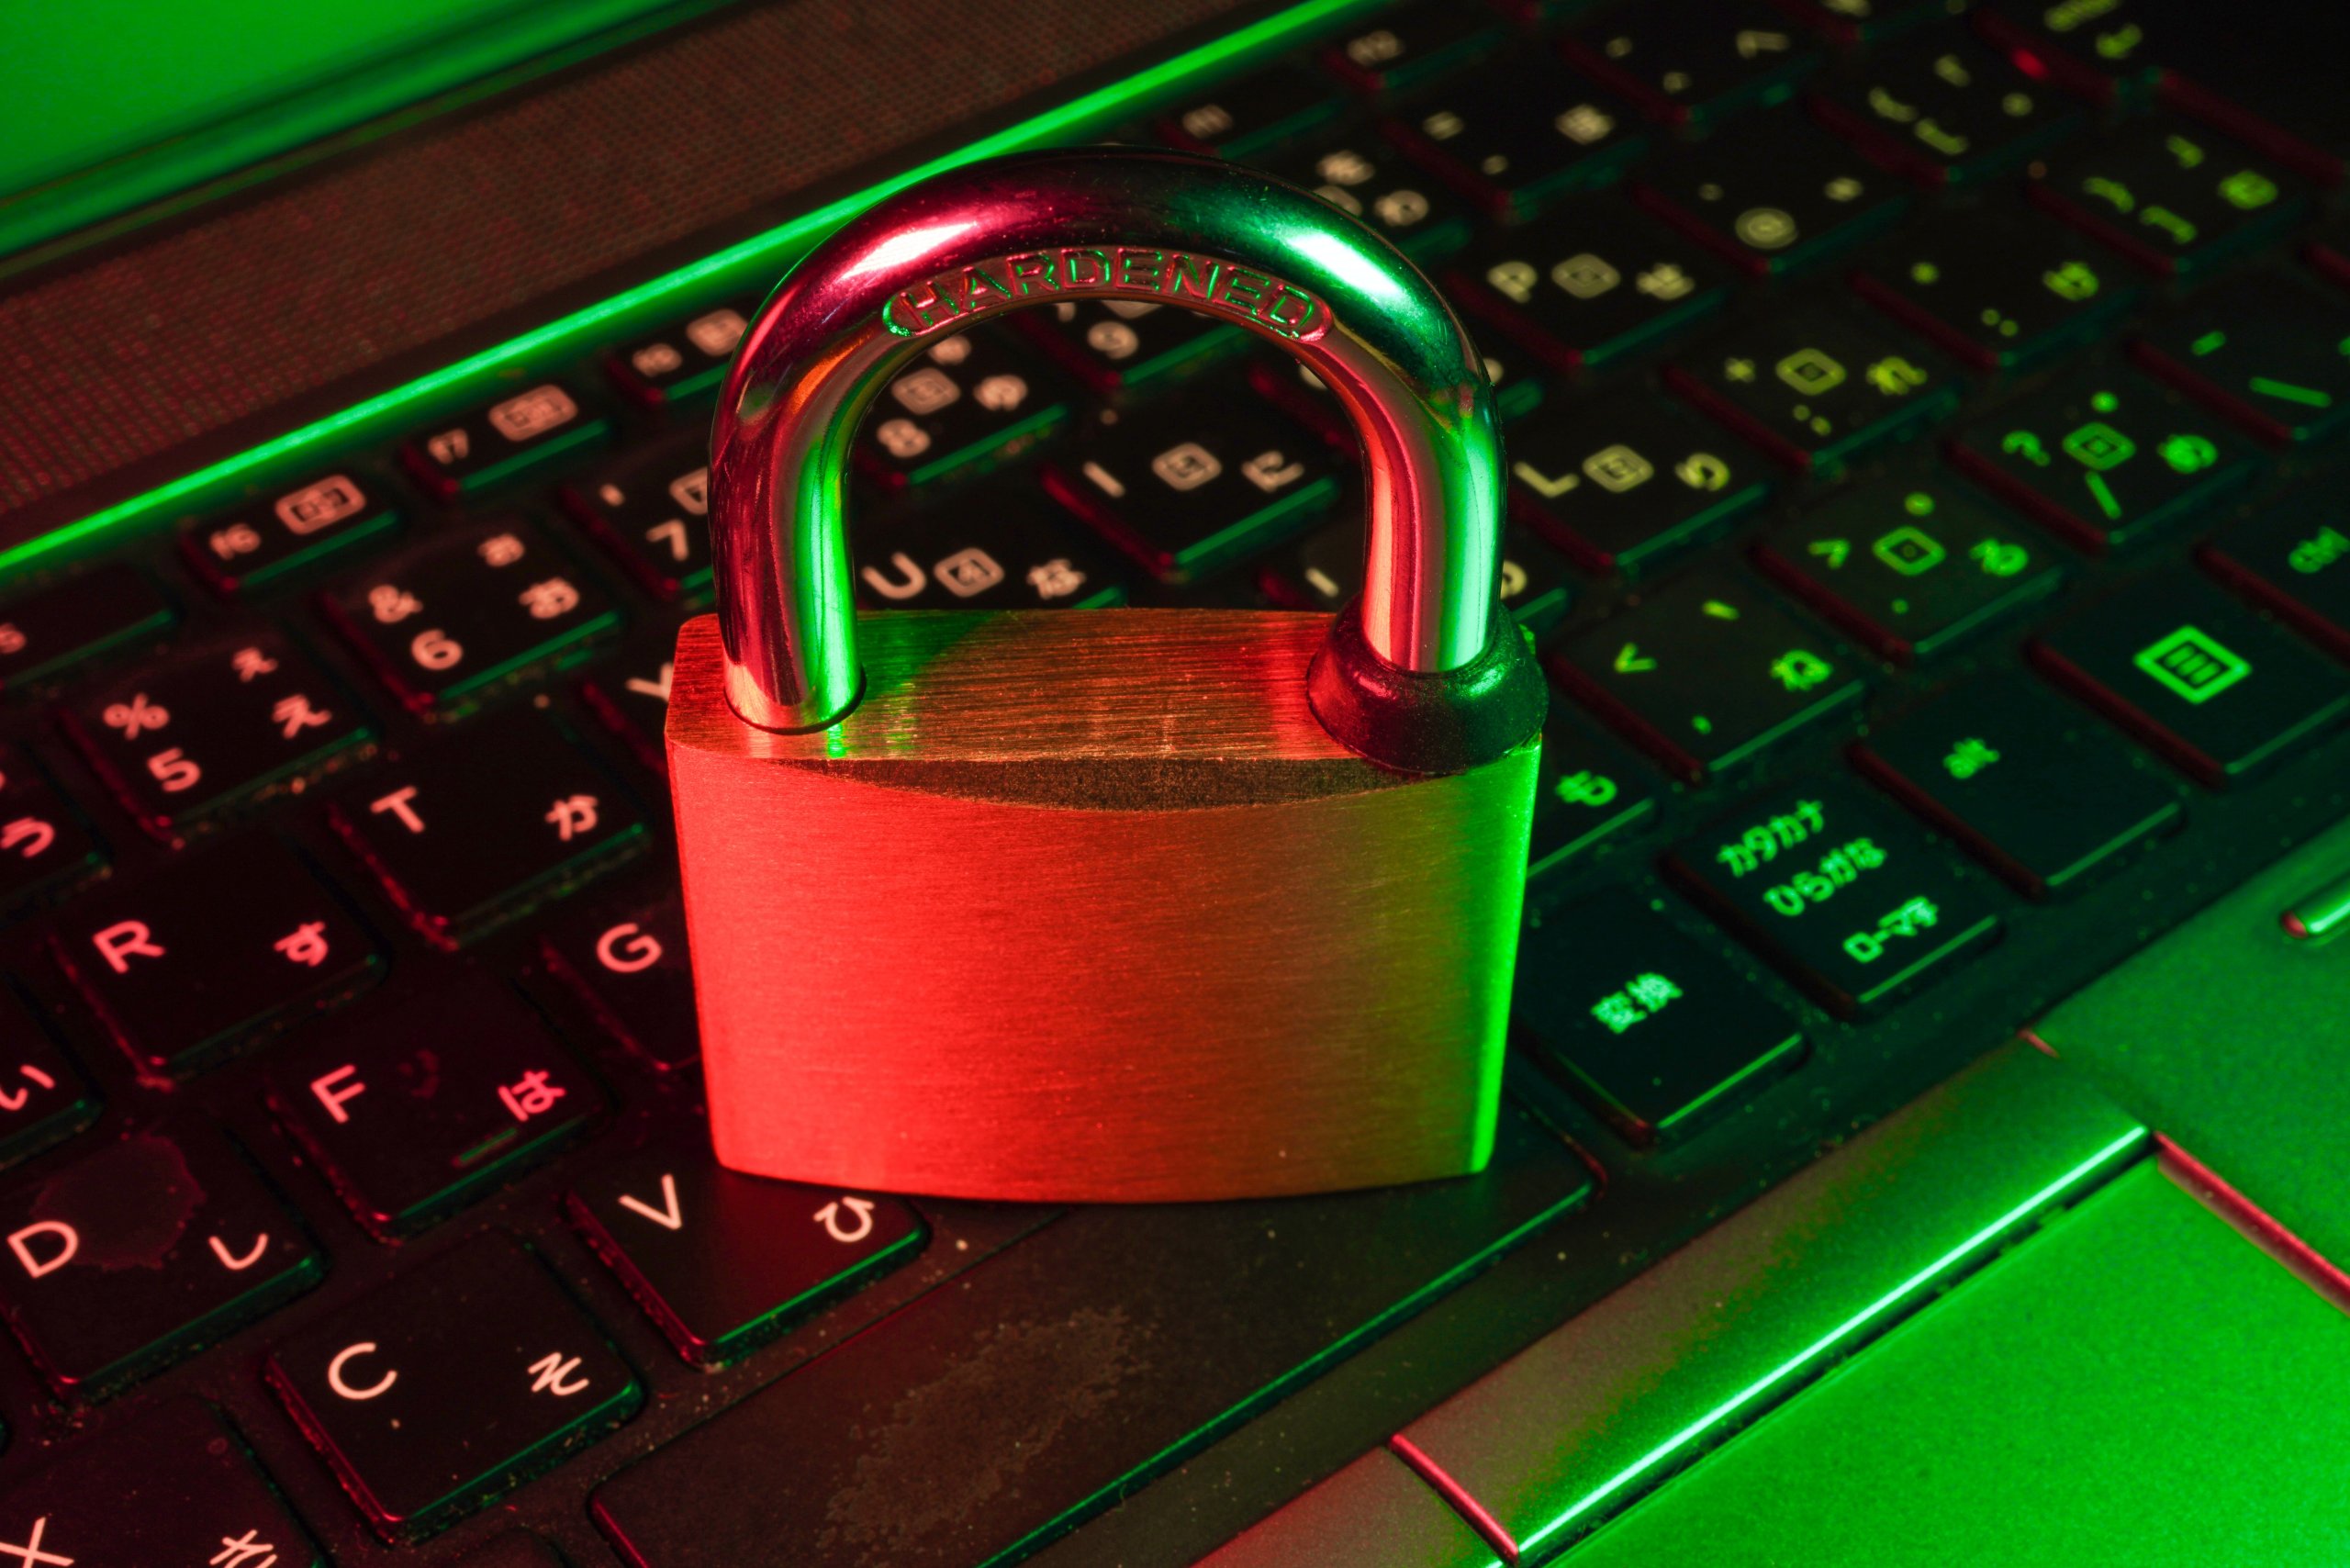 VPN provides online security